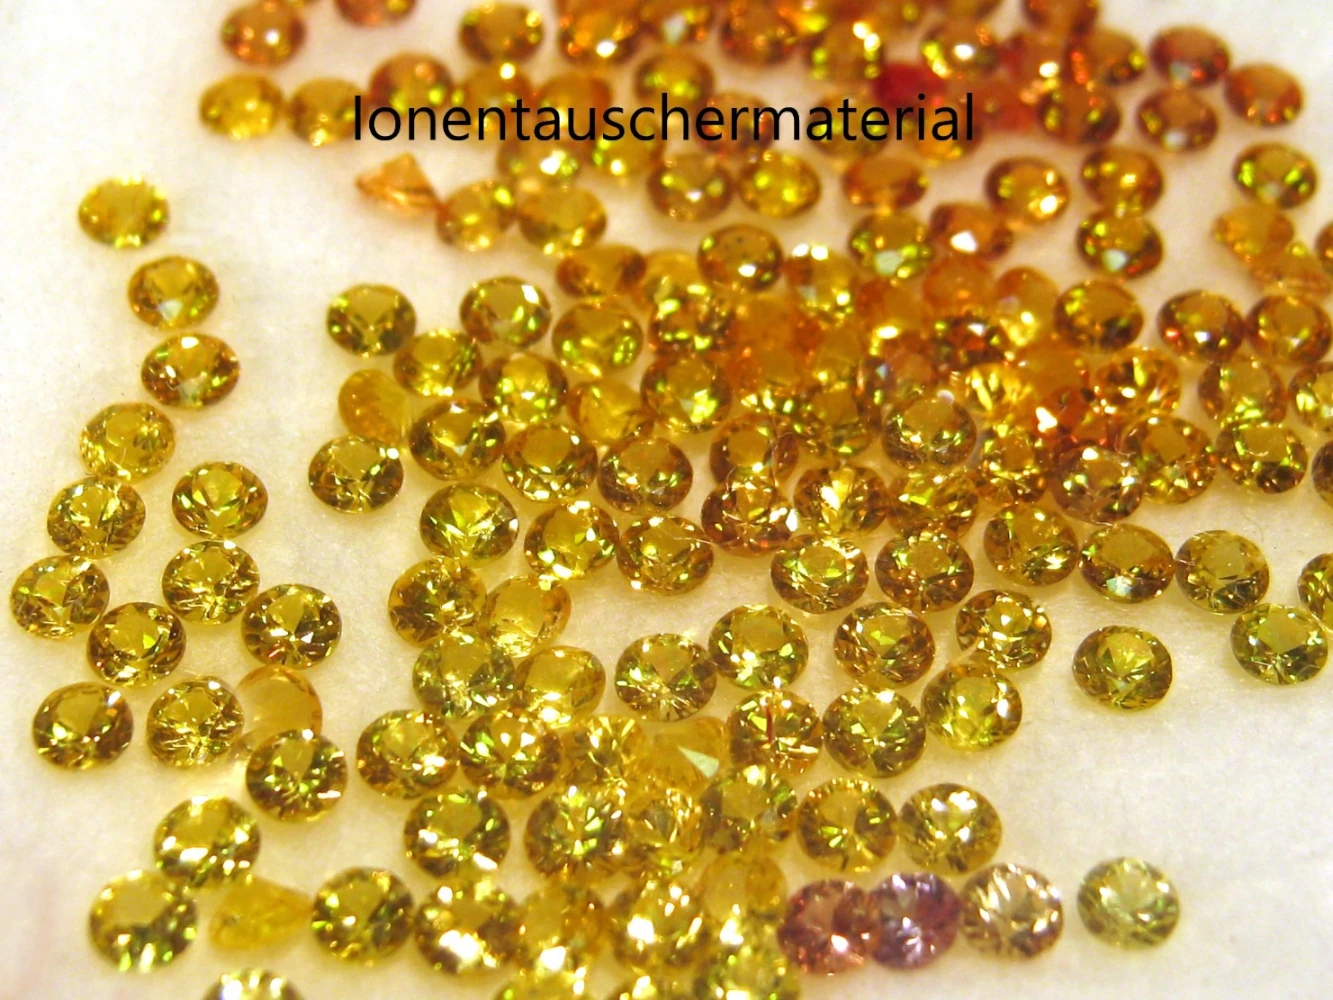 Auf dem Bild sind goldene Harzkügelchen zu sehen, die mit Ionen geladen sind und als Ionentasuchermaterial verwendet werden